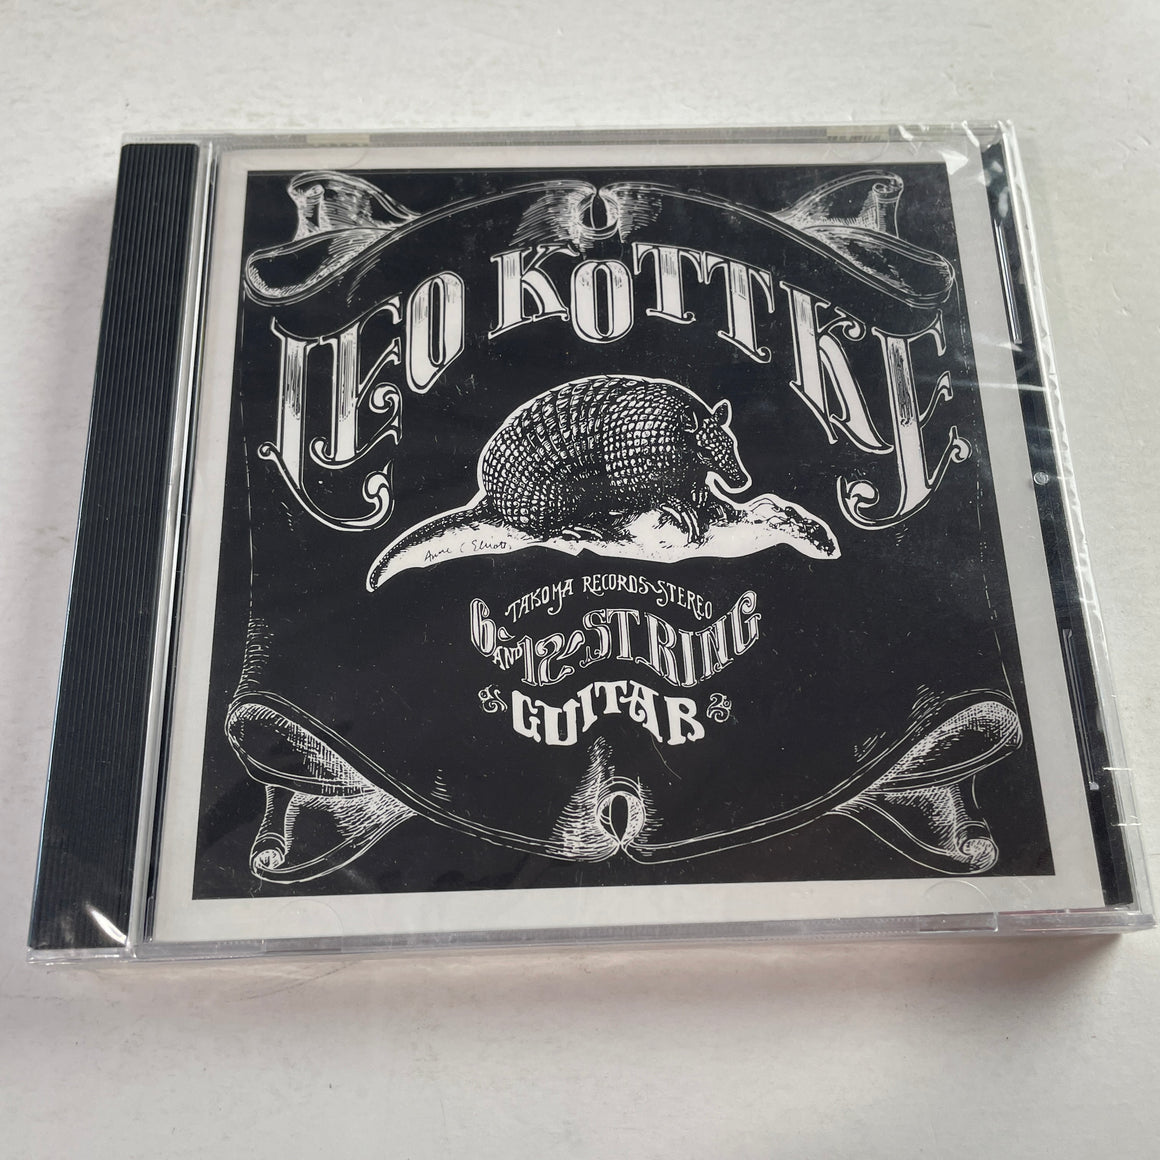 Leo Kottke 6- And 12-String Guitar New Sealed CD M\M